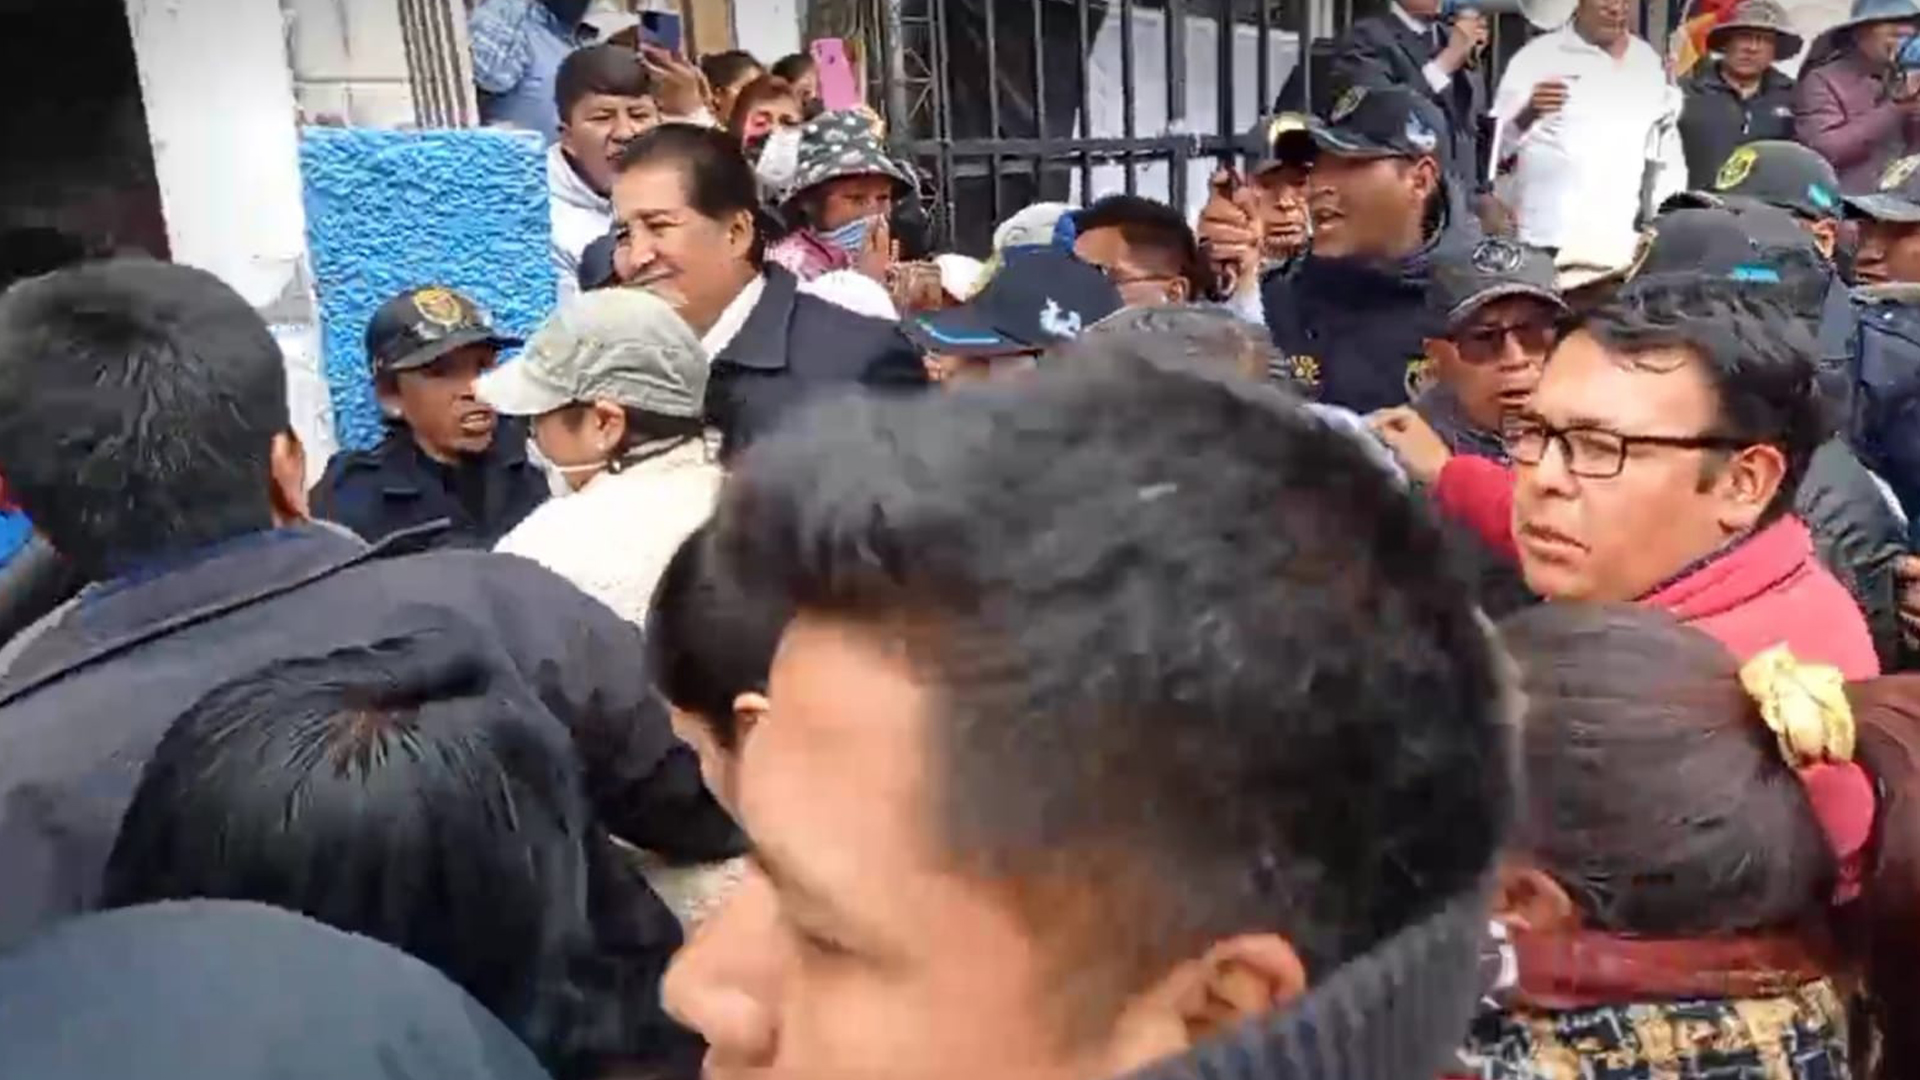 Manifestantes rechazaron y sacaron a empujones a alcalde Óscar Cáceres